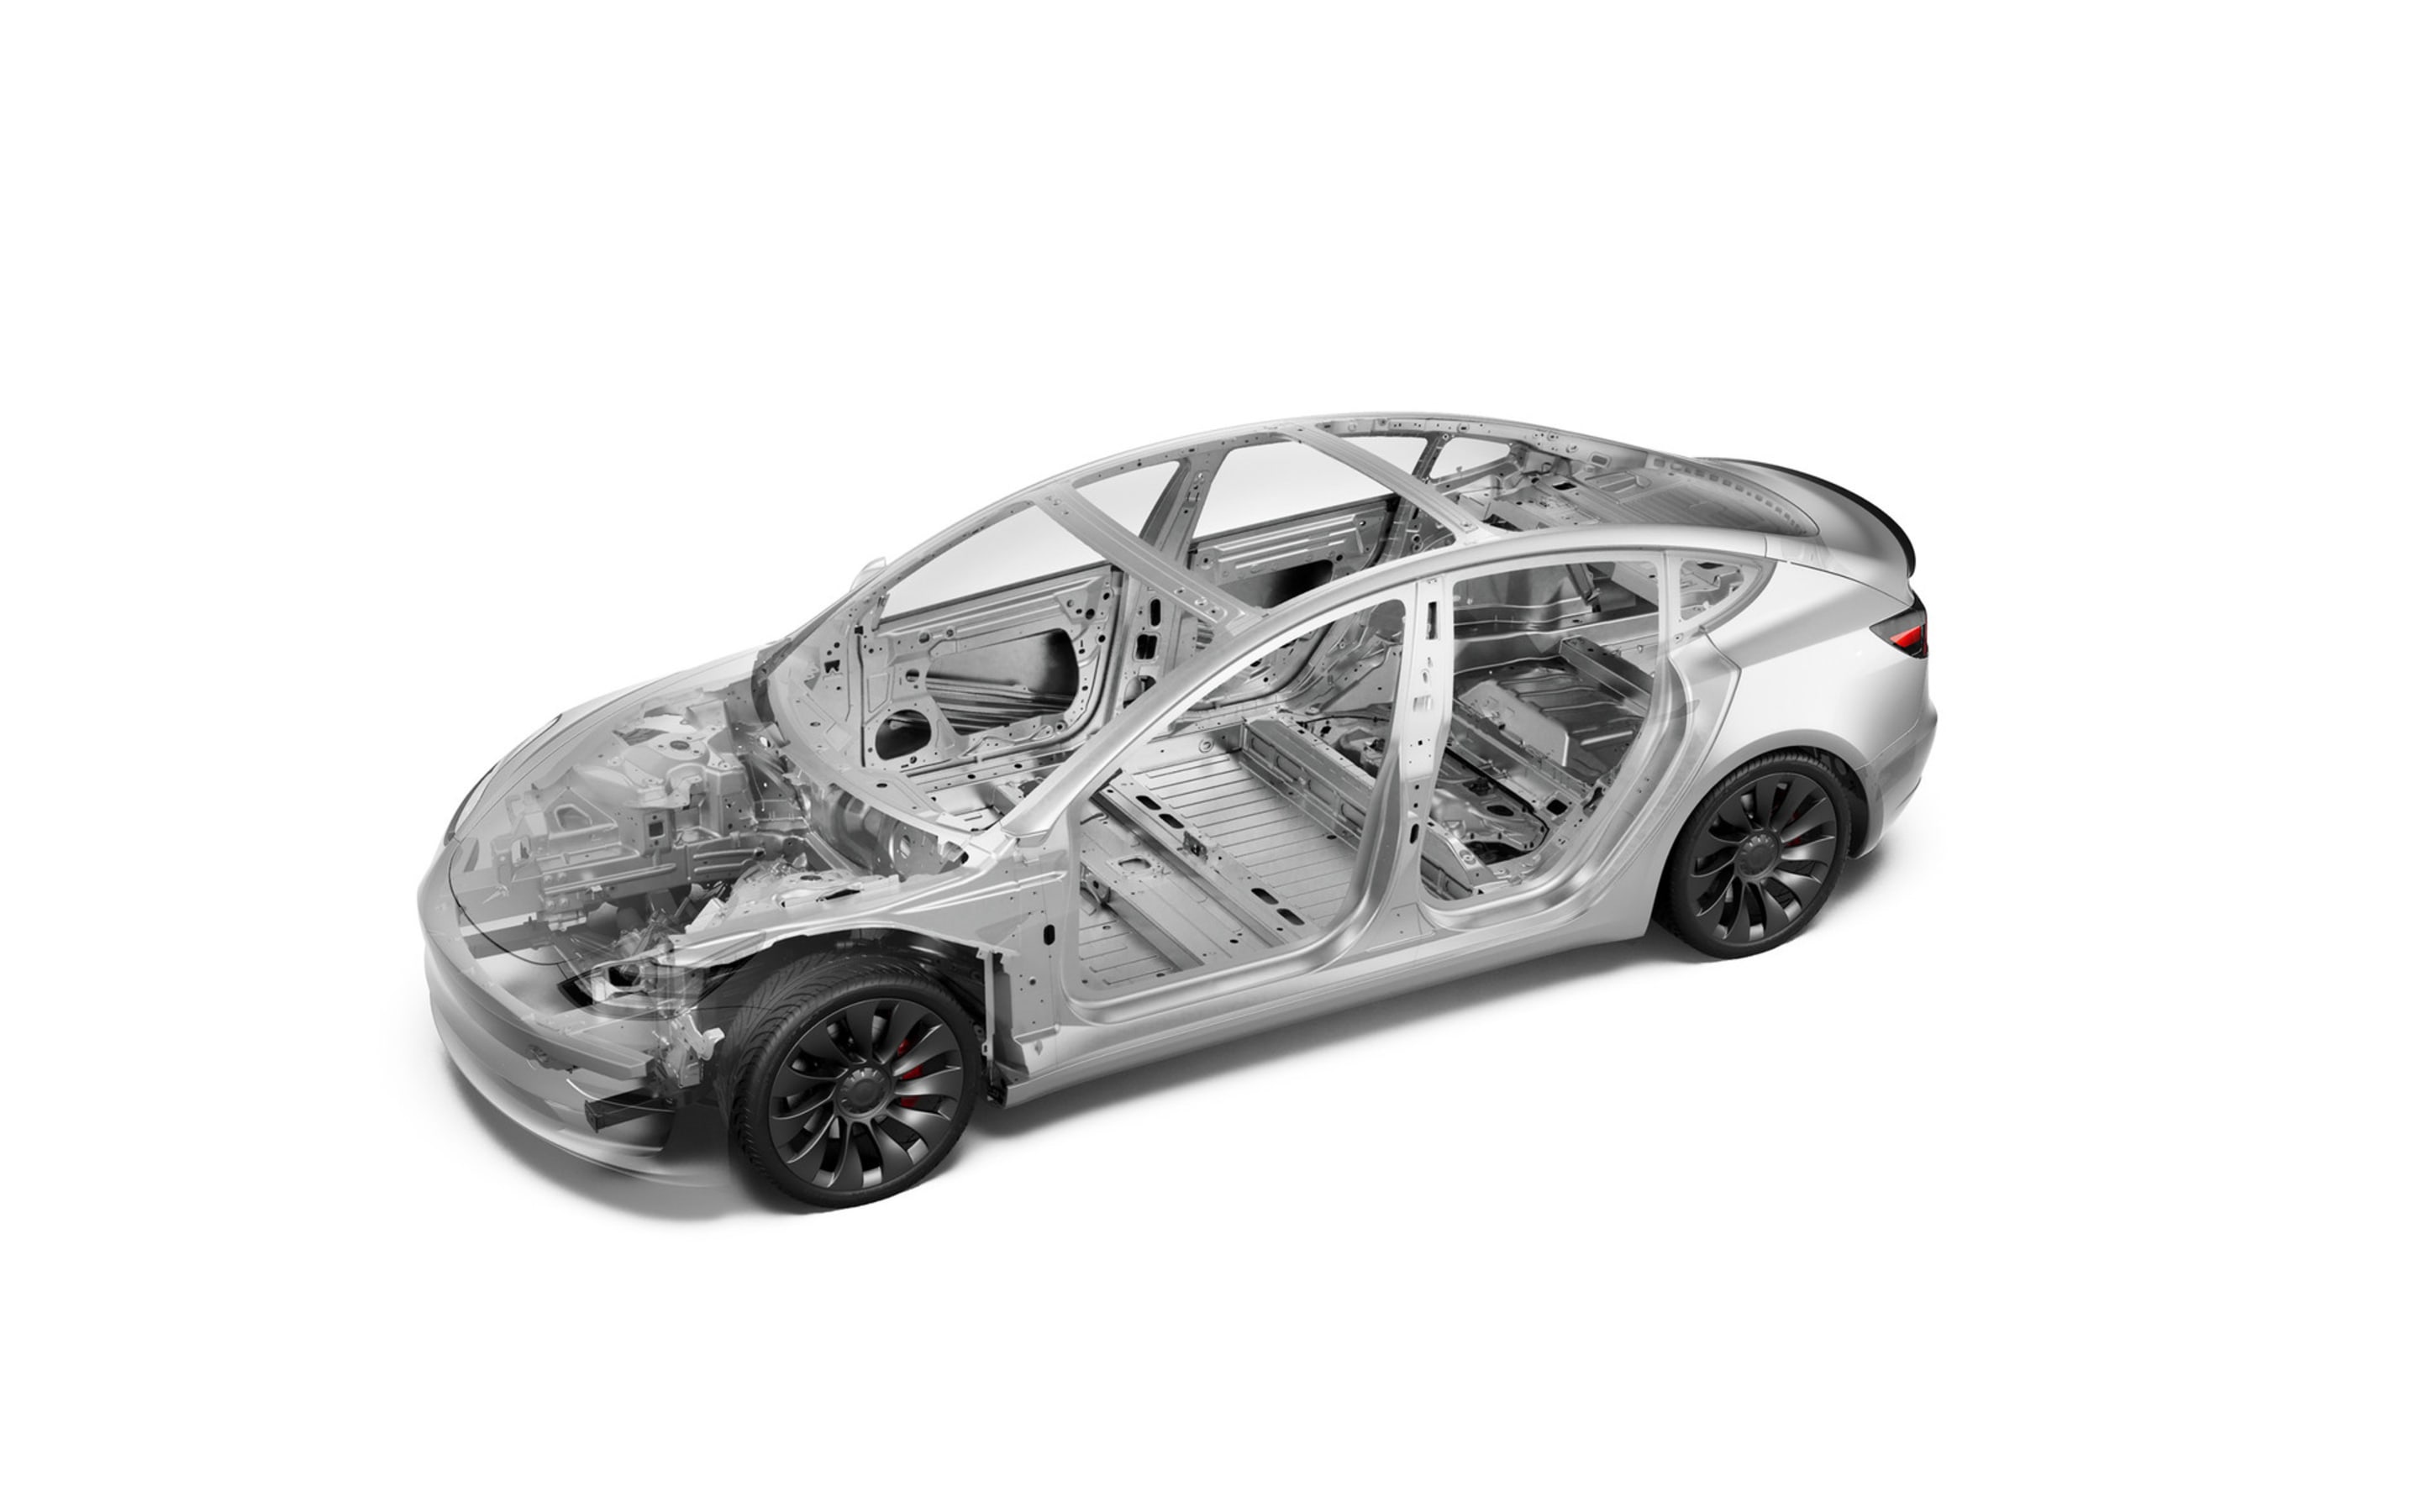 Imagem de destaque sobre a segurança do Model 3